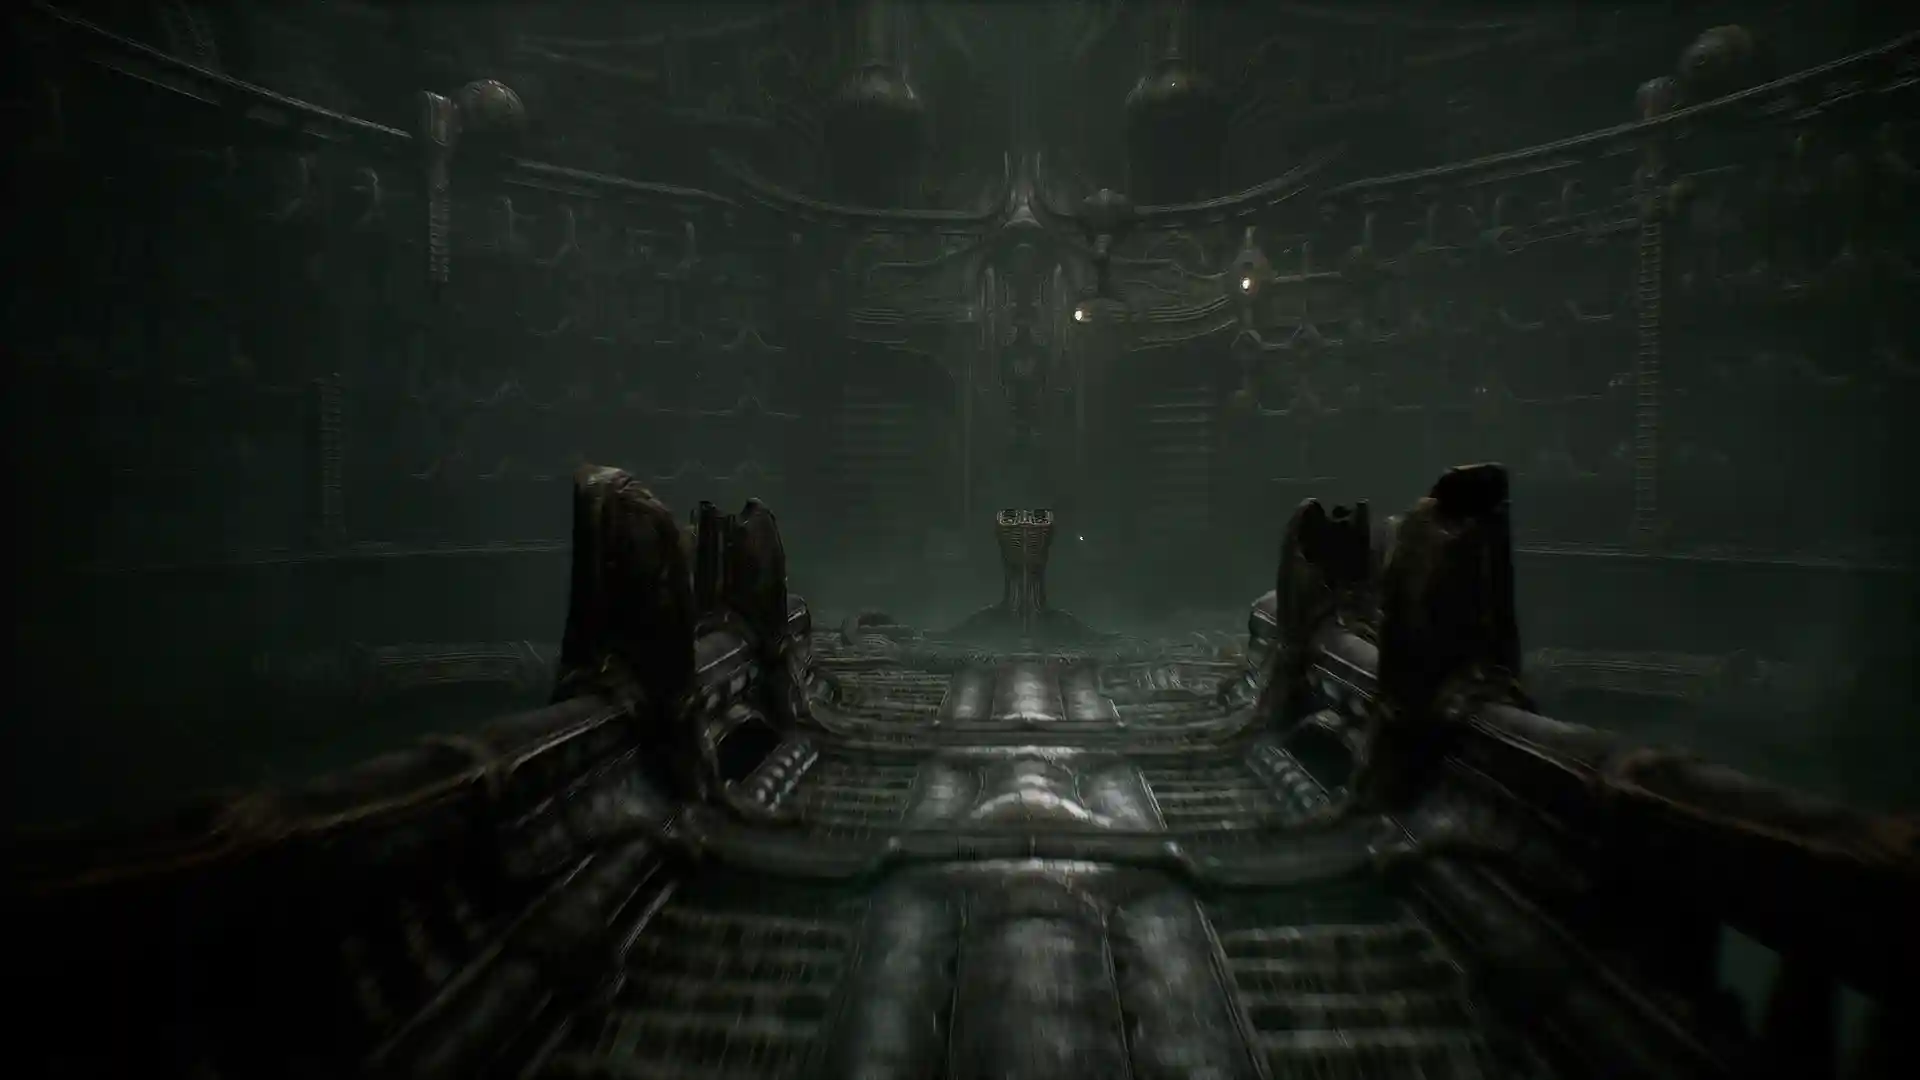 Первое лицо персонажа, держащего биомеханическое оружие в мрачном коридоре.